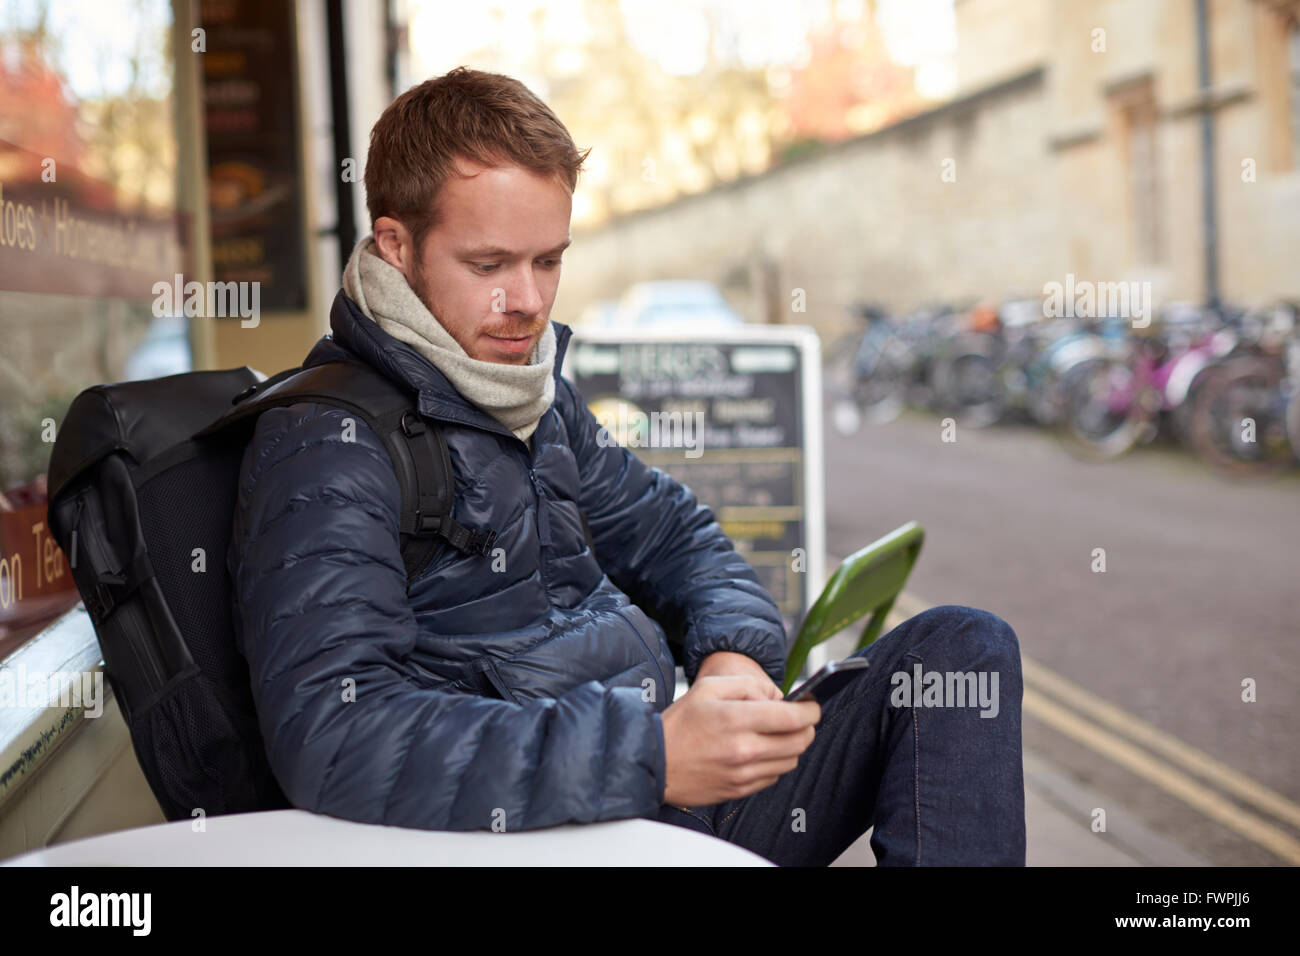 Hombre sentado fuera de Cafe Enviar mensaje de texto Foto de stock